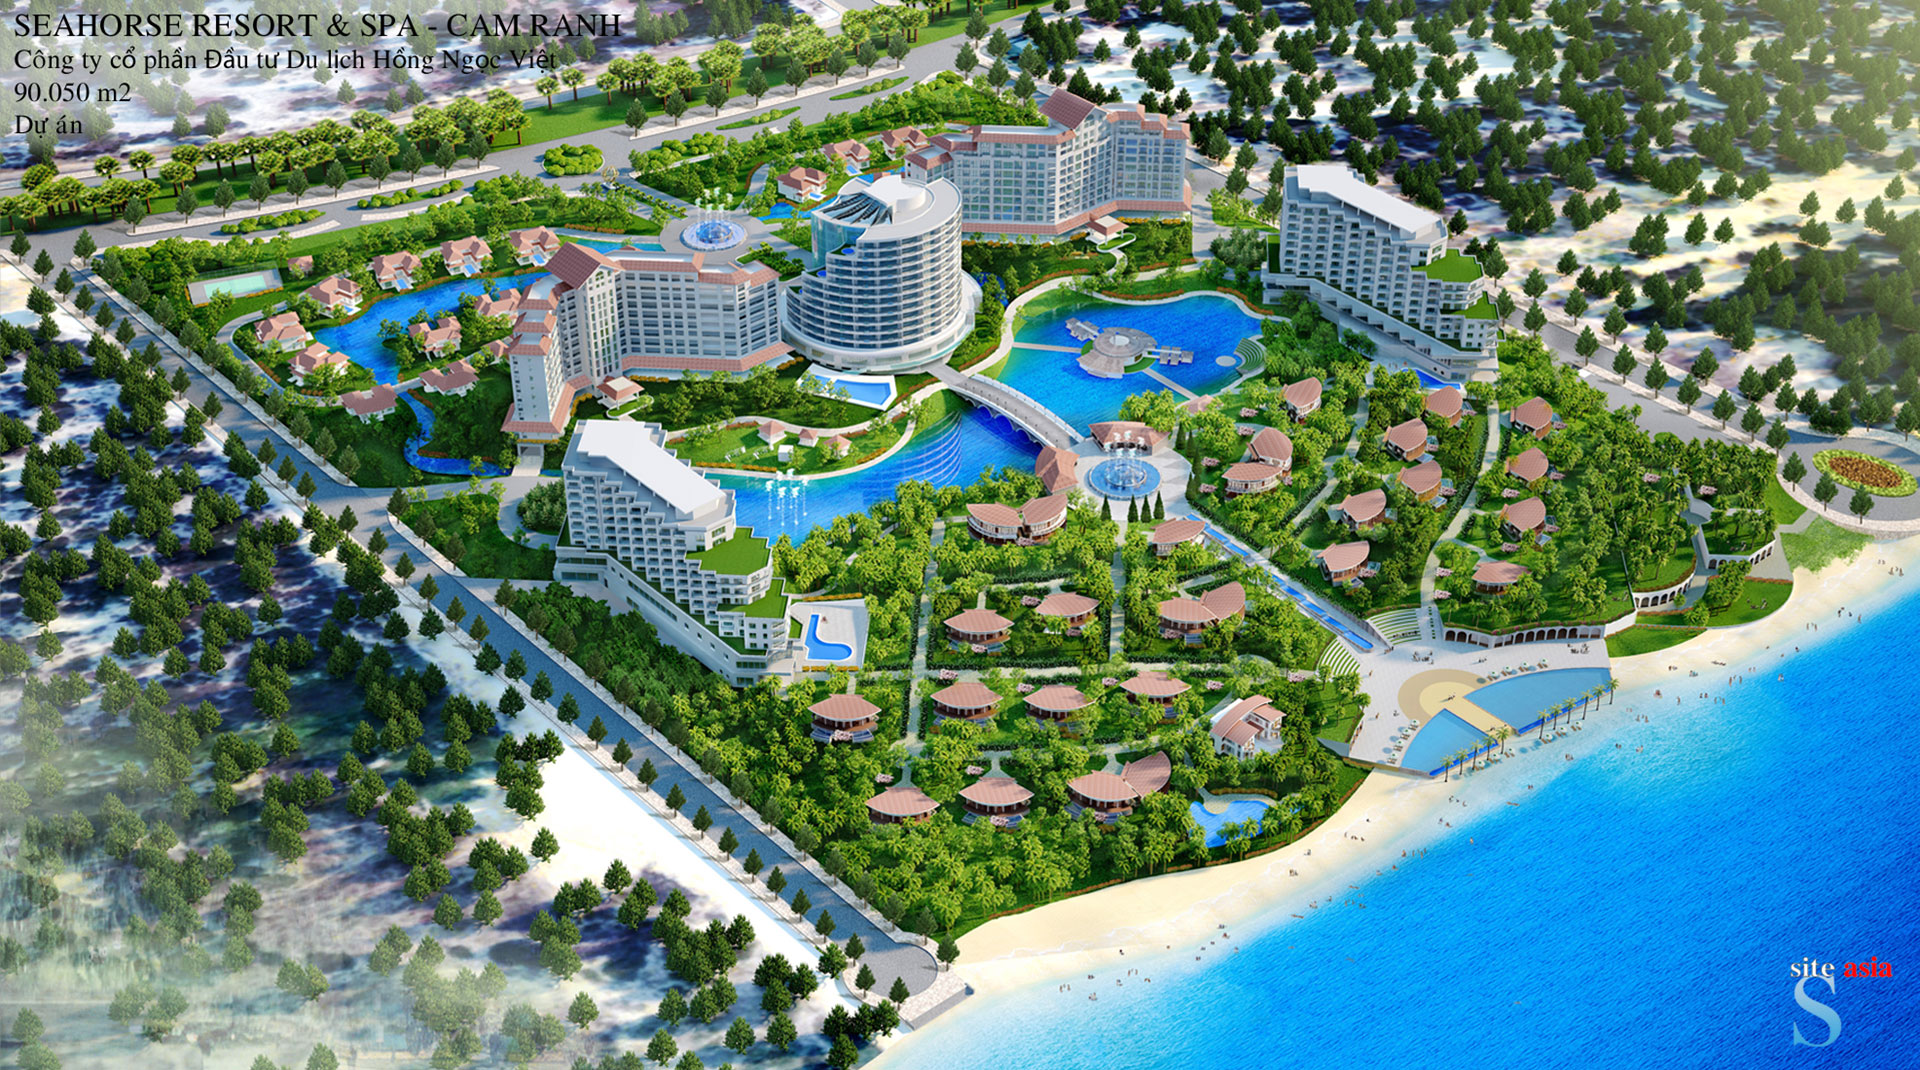 Seahorse Resort & Spa – Cam Ranh